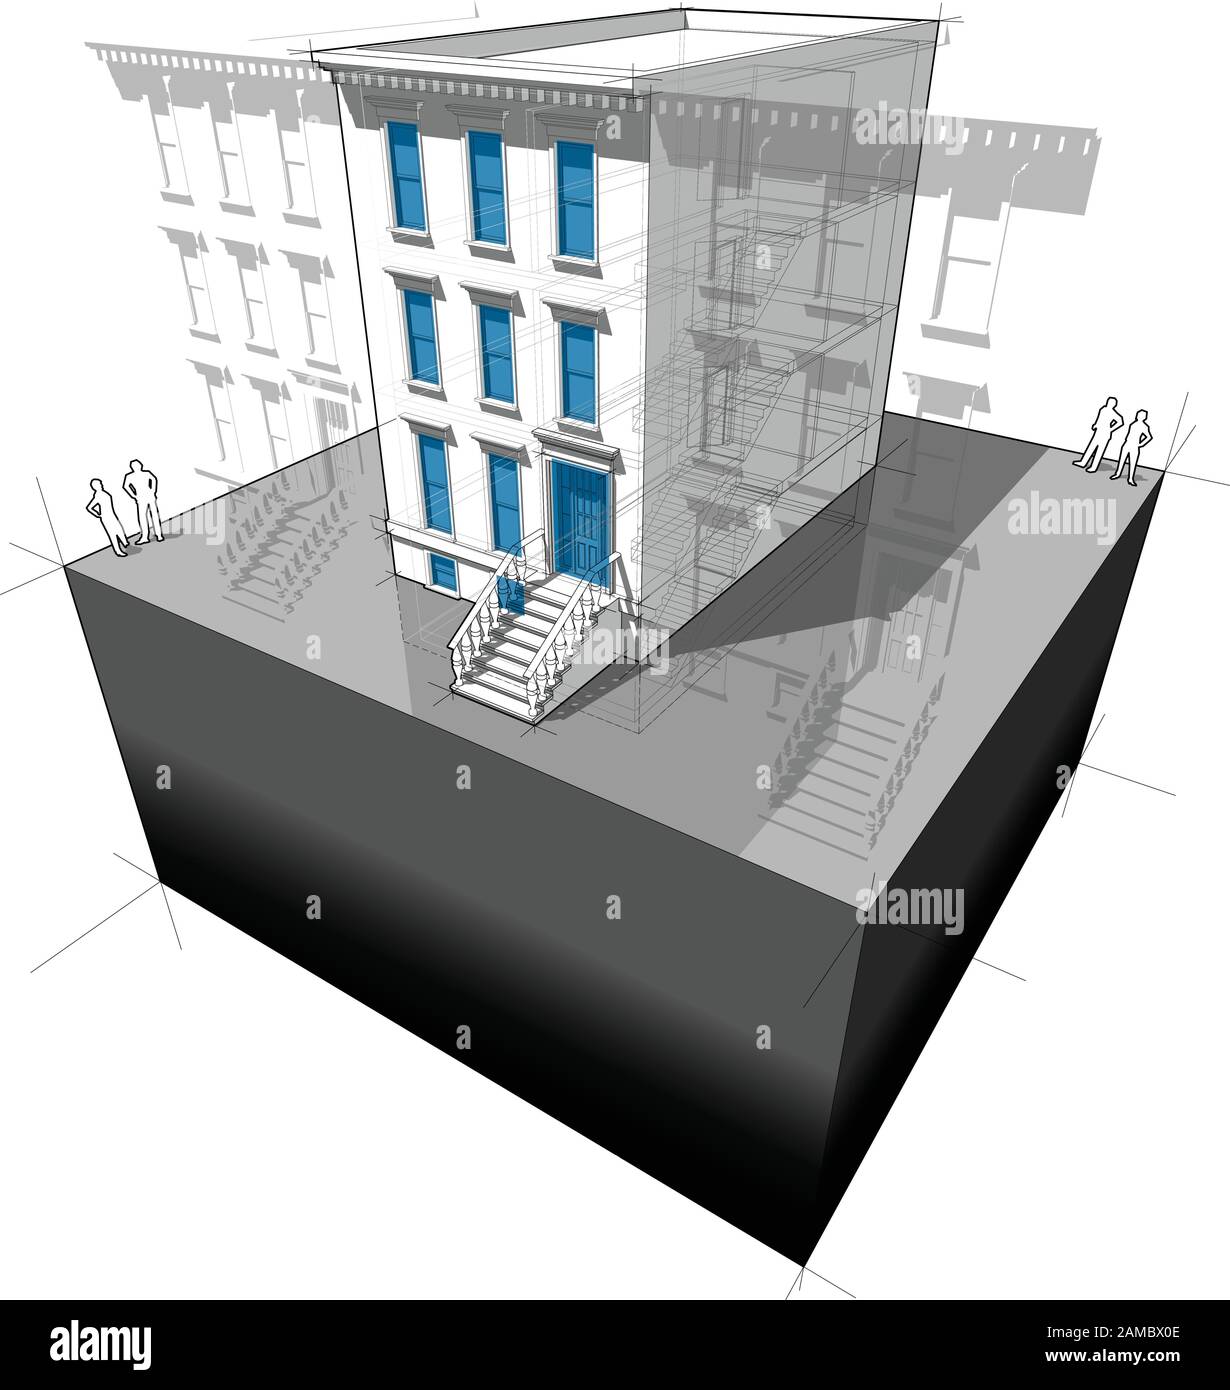 Diagramm eines typischen amerikanischen Stadthauses mit neuen Fenstern und Türen zur Verbesserung der Energieeffizienz des Gebäudes Stock Vektor